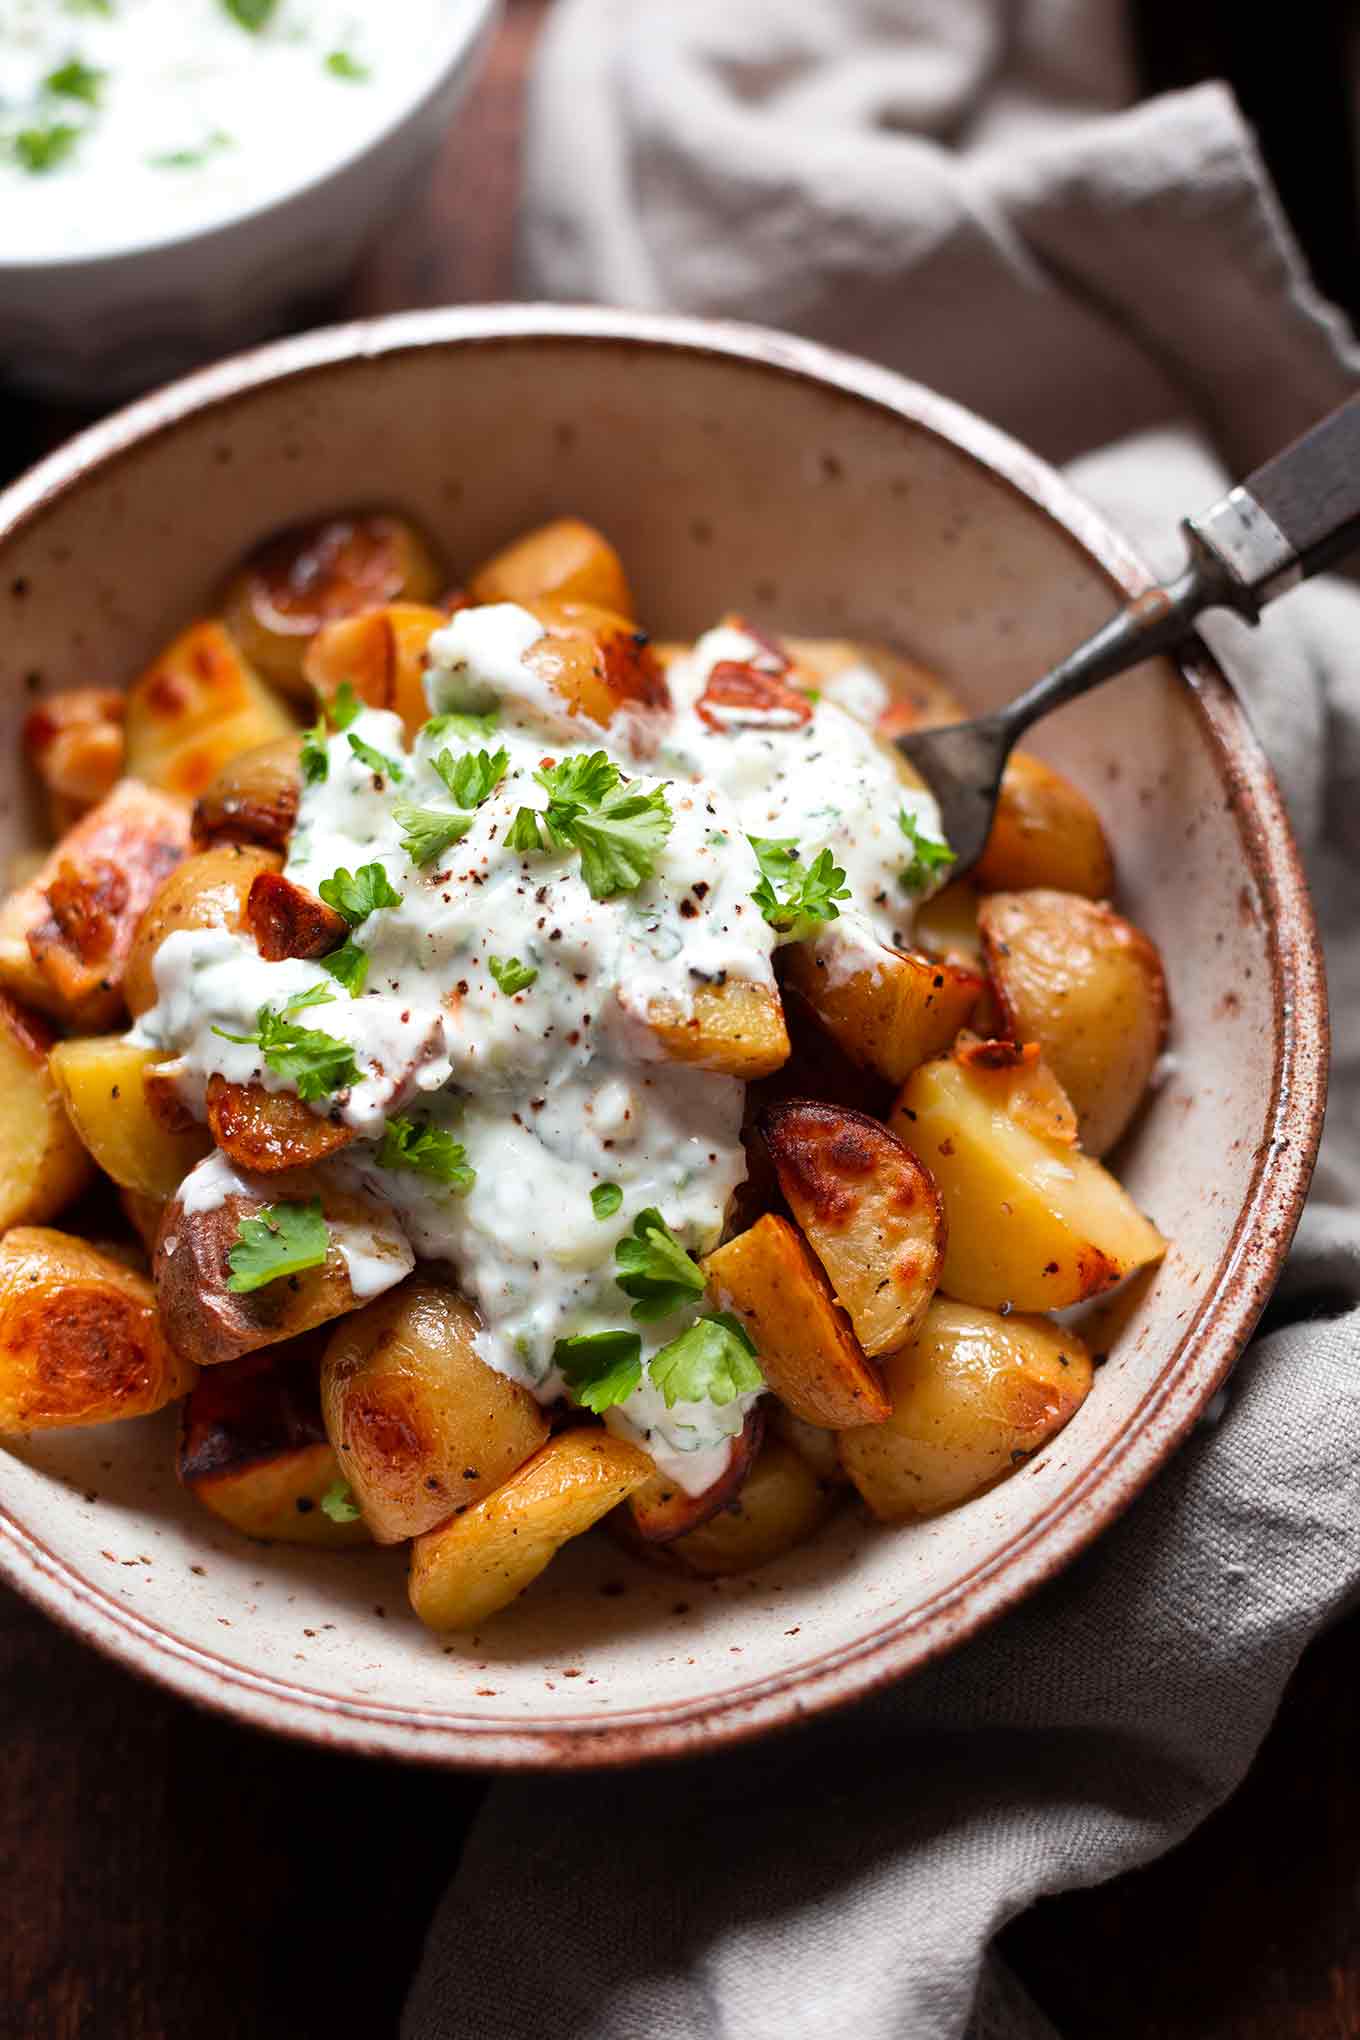 Knoblauch Ofenkartoffeln mit Tzatziki. 20+ schnelle und gesunde Vorratsrezepte. Für alle Rezepte braucht ihr nur Zutaten aus Kühkschrank und Vorratskammer - Kochkarussell Foodblog #vorratsrezepte #vorrat #mealprep